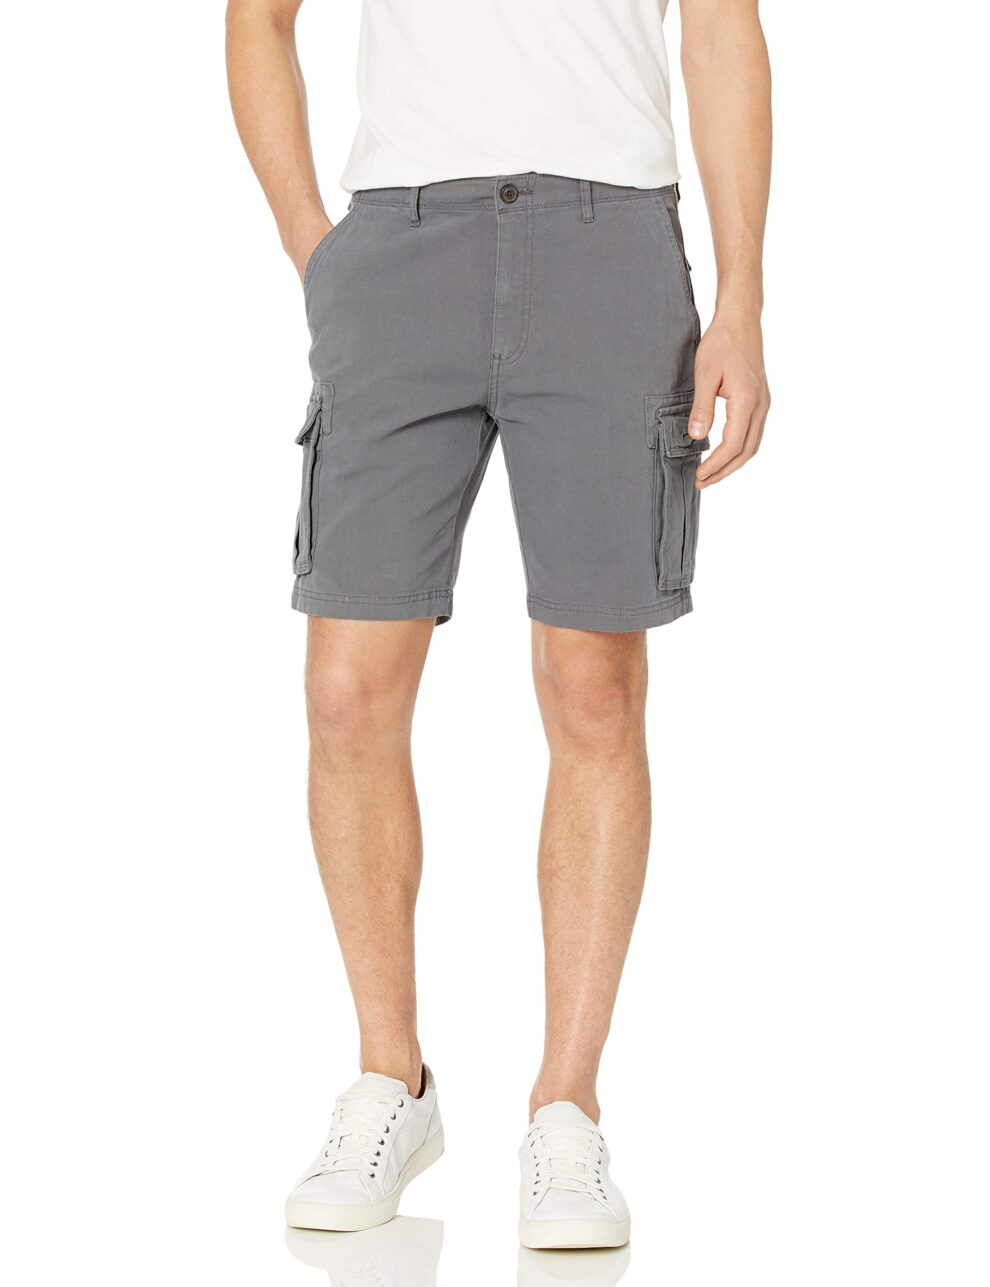 Como llevar shorts para hombres con mucho estilo durante el verano